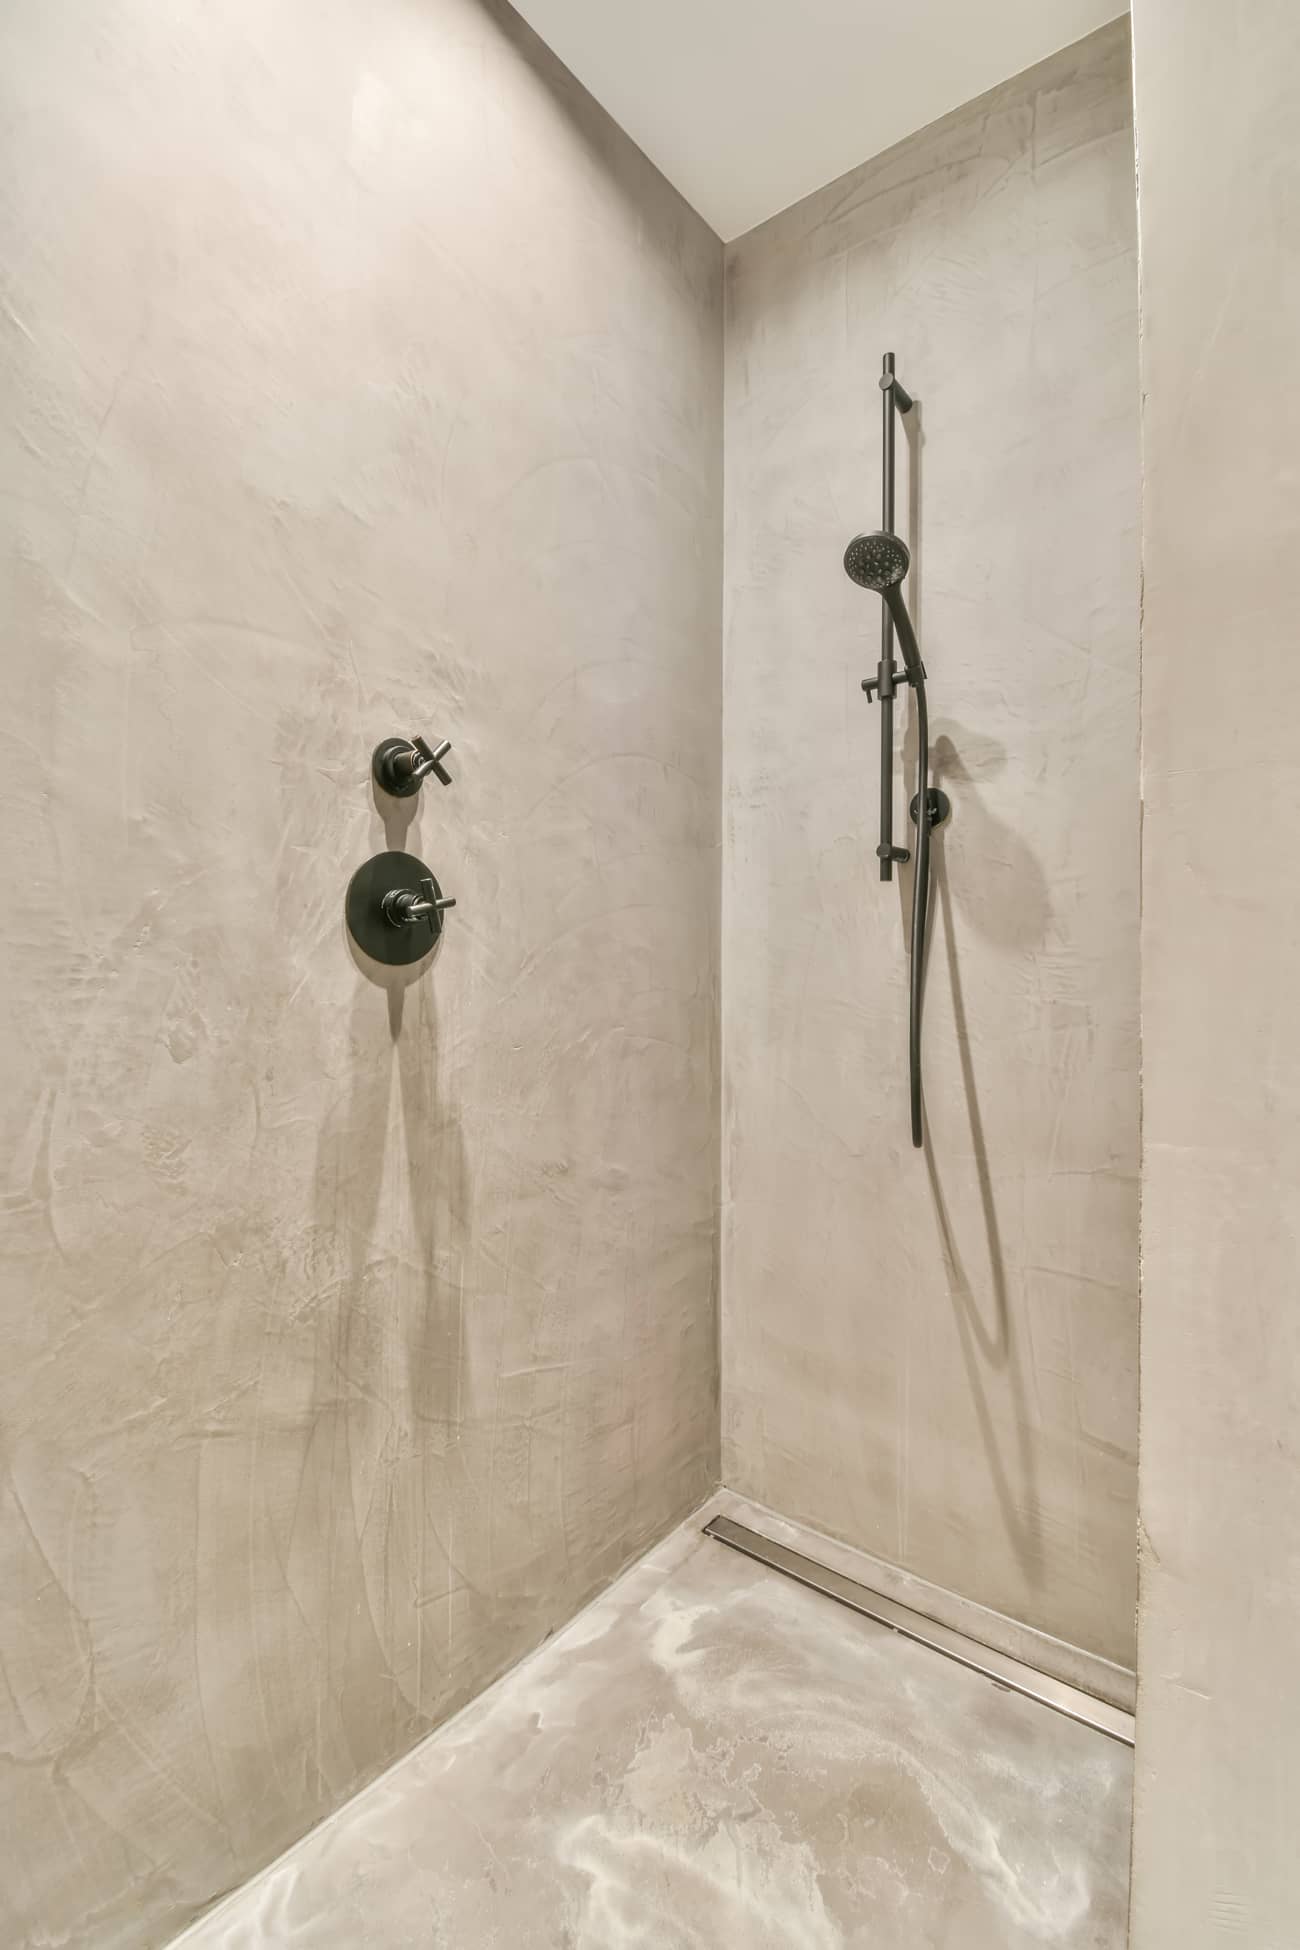 Yenilenmiş banyo, zemin ve duvarlarda mikro çimento duş ile